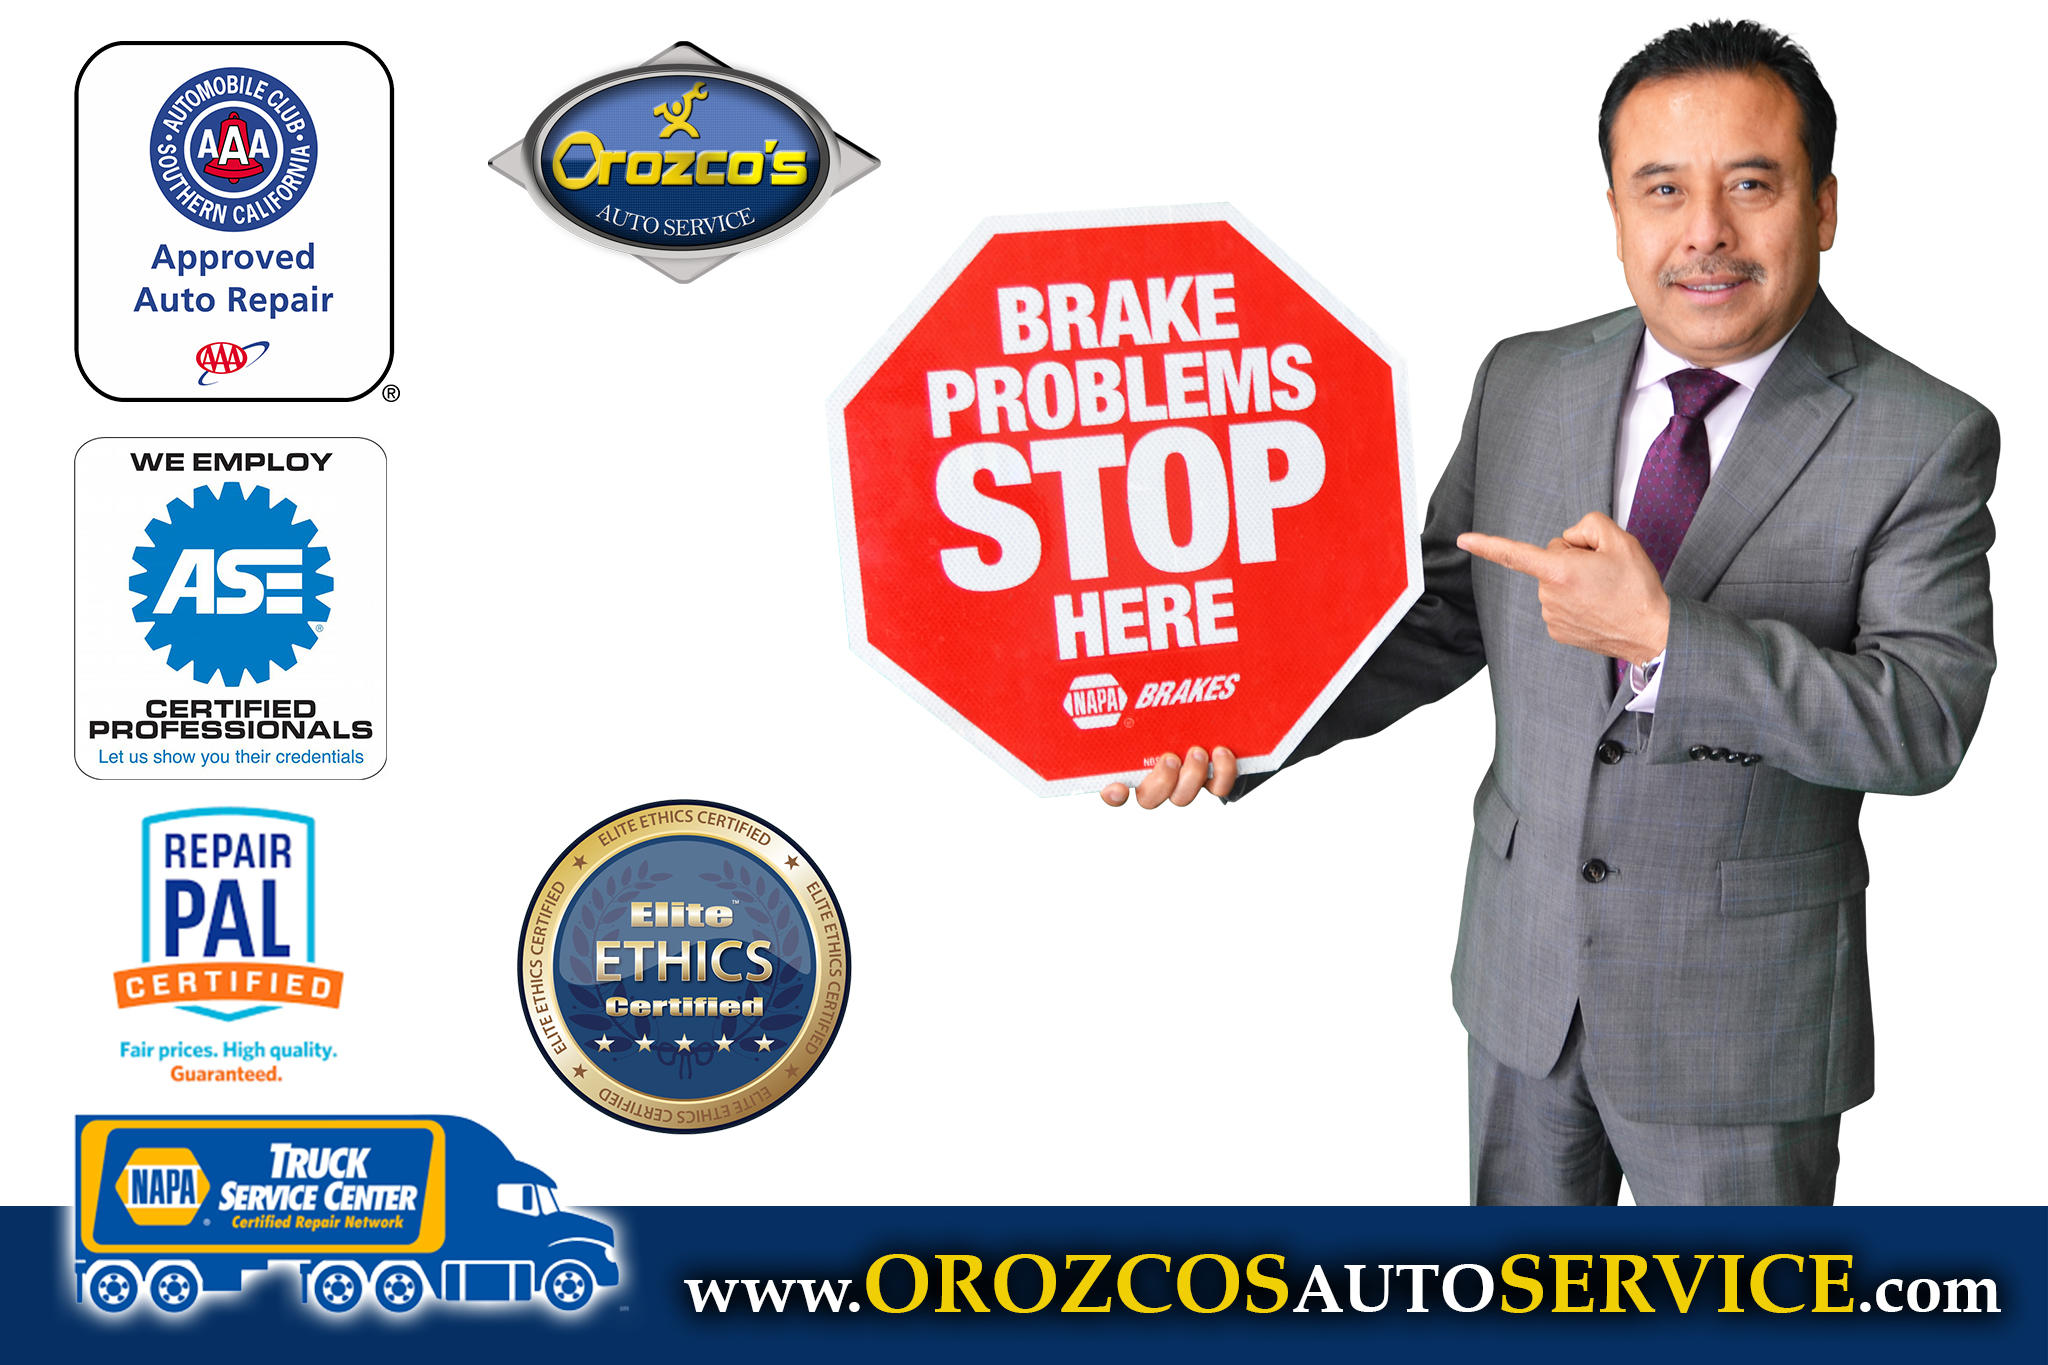 Orozco's Auto Service Photo